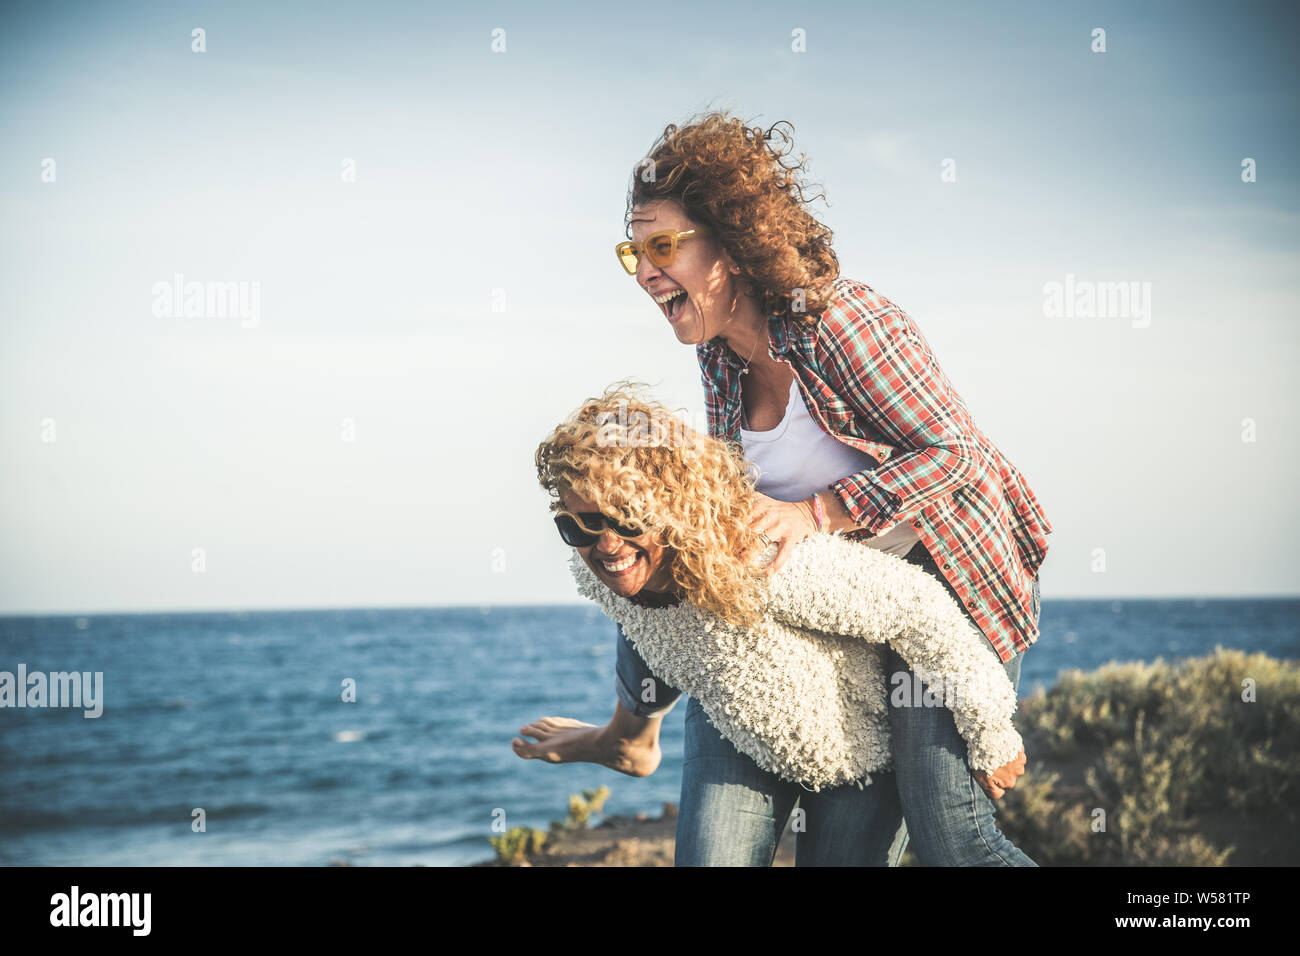 Ritratto di due pretty woman godere del tempo libero. Sorridente medioevo ragazze dando il suo amico ridere piggyback mentre godendo la giornata insieme a bea Foto Stock